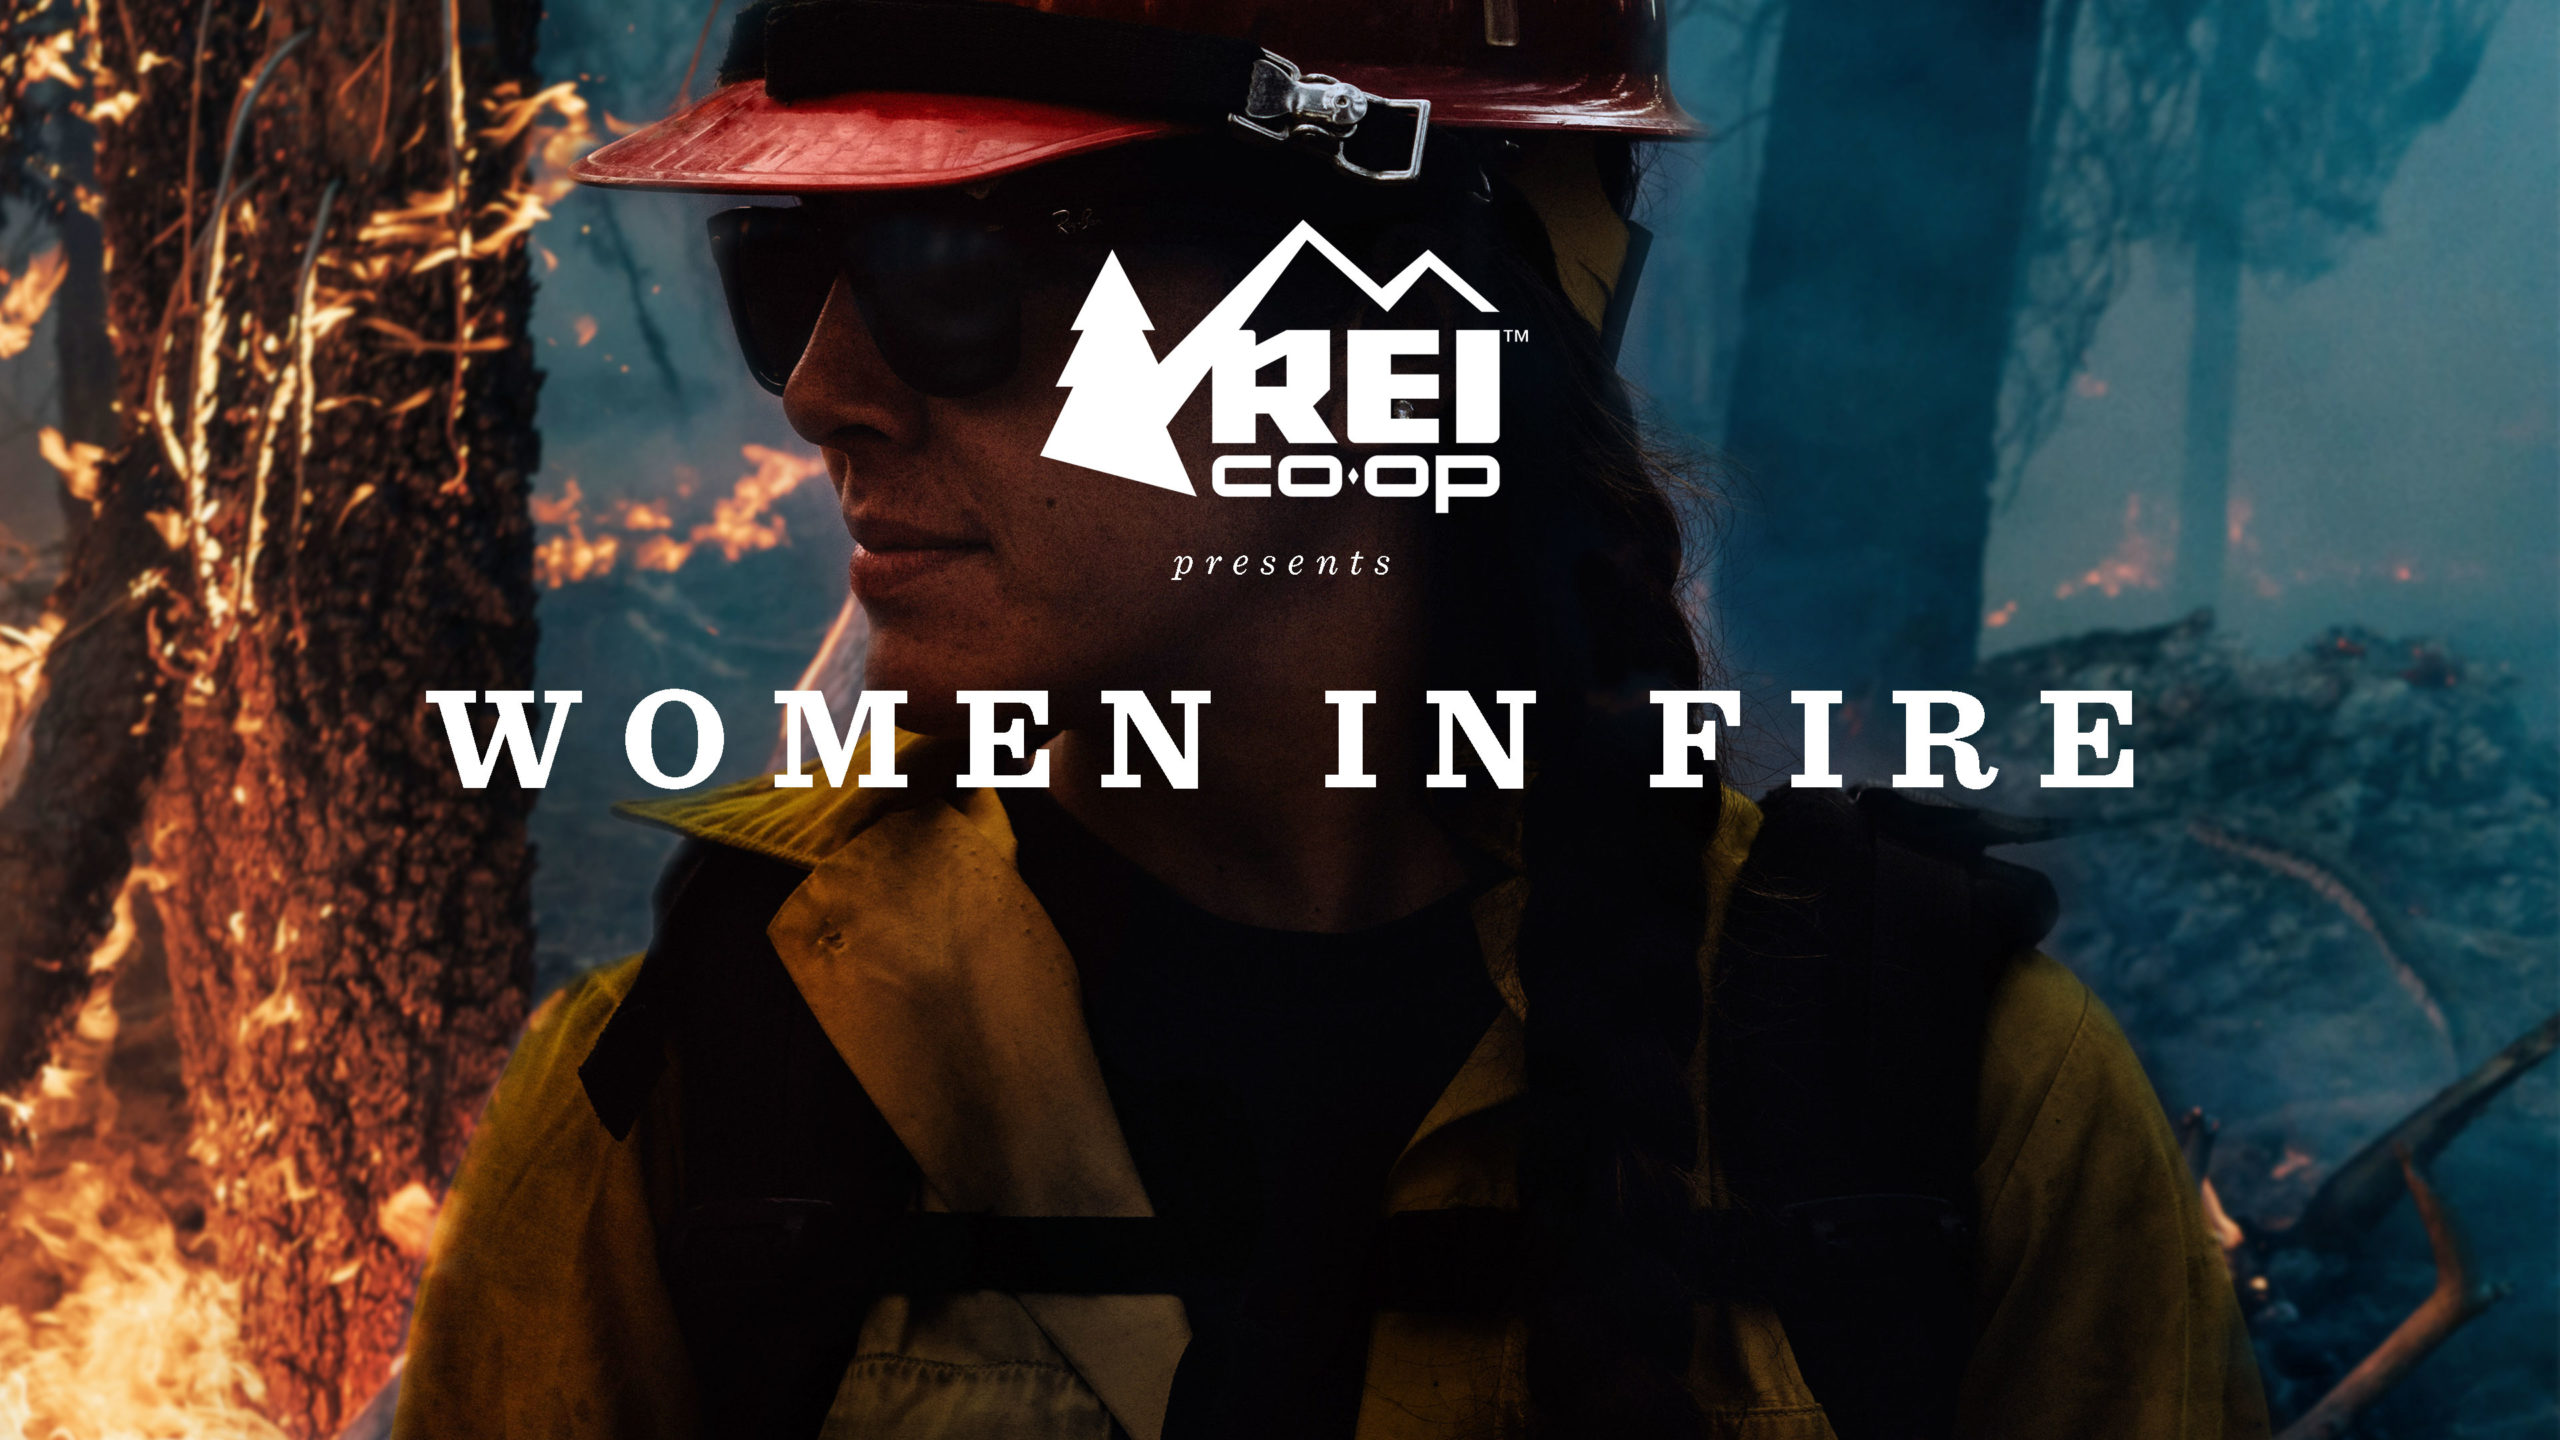 WOMENINFIRE-poster2